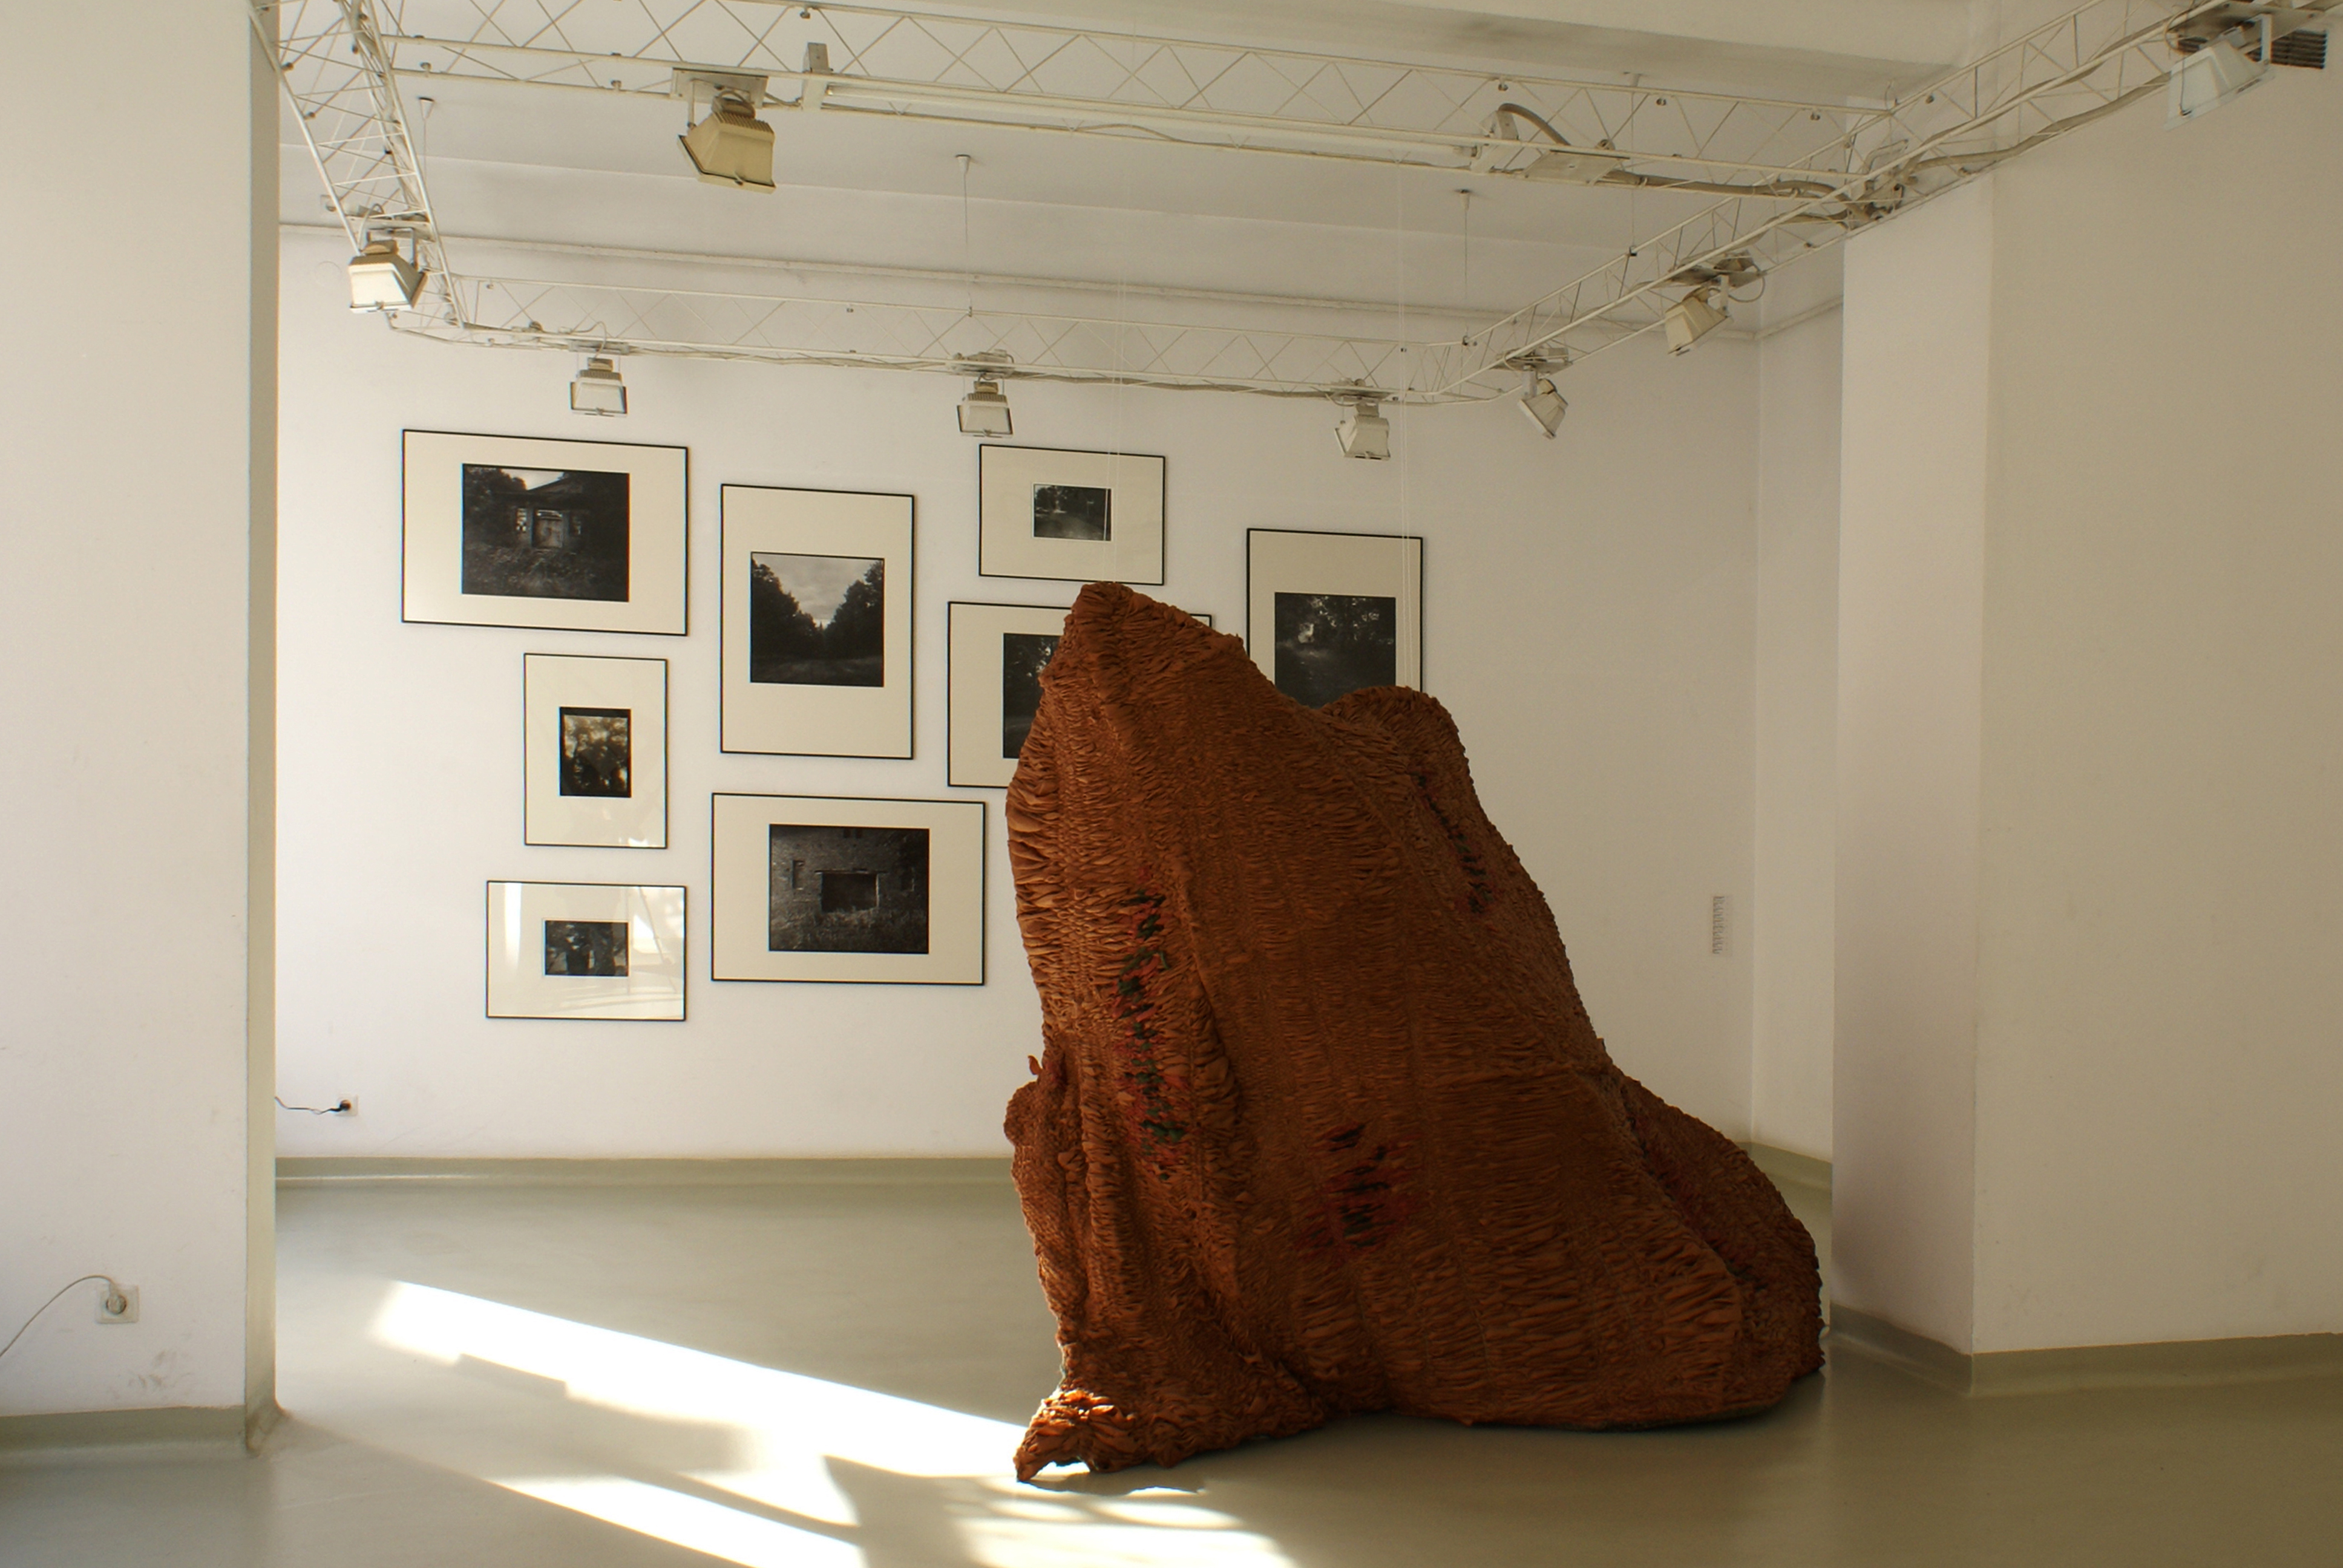 Karolina Janikowska, "In Kupferberg", 2013, obiekt, dźwięk